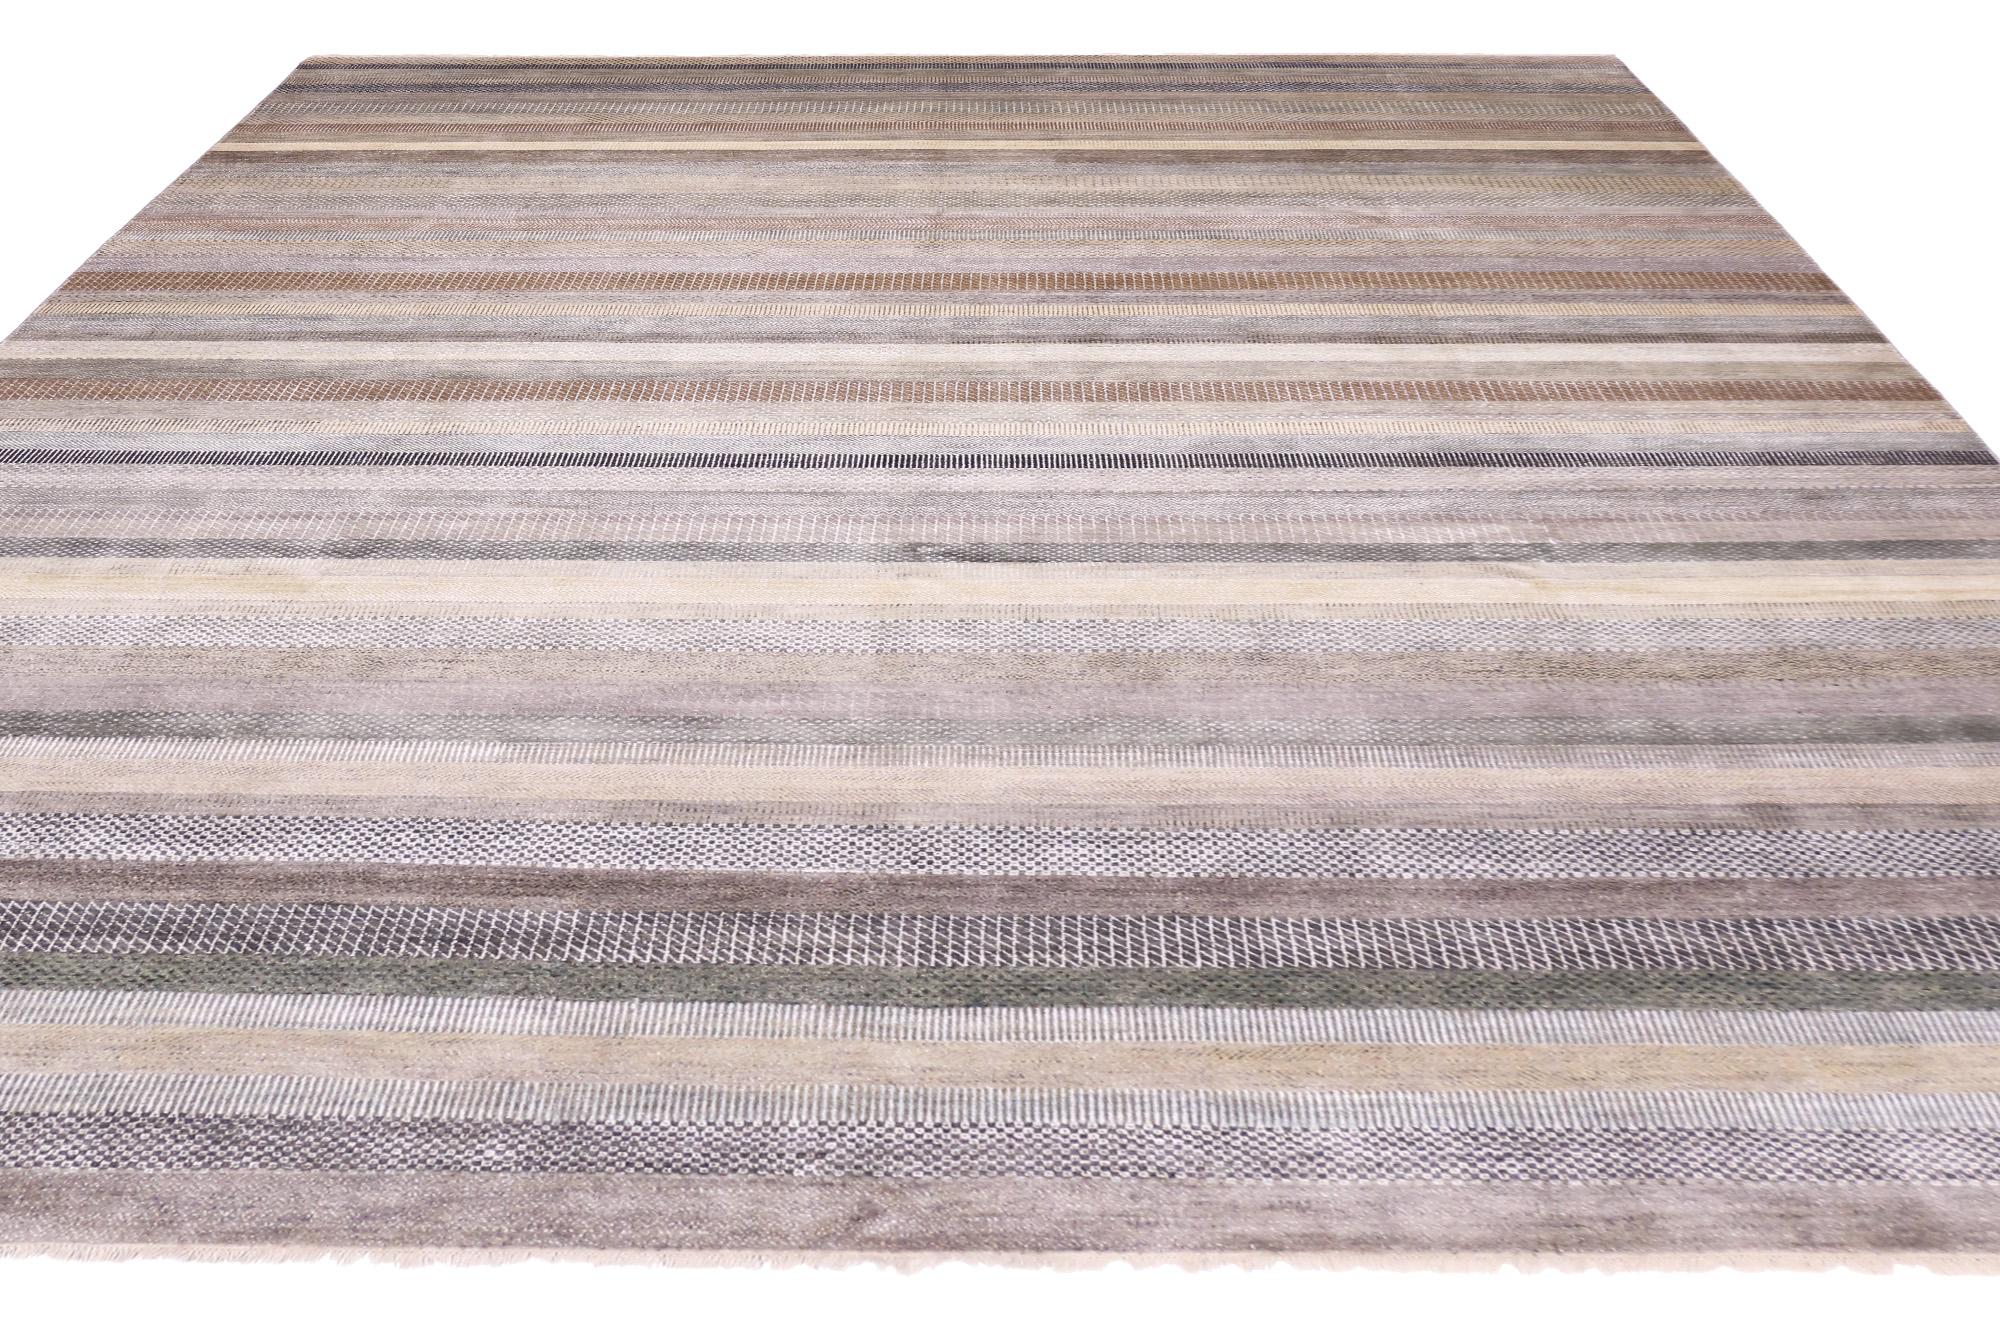 30013 New Transitional Striped Area Rug, 09'10 x 14'01. Indische Woll- und Seidenteppiche im Übergangsstil sind exquisite handgefertigte Teppiche, die traditionelle indische Webtechniken mit zeitgenössischen Designelementen verbinden. Diese Teppiche